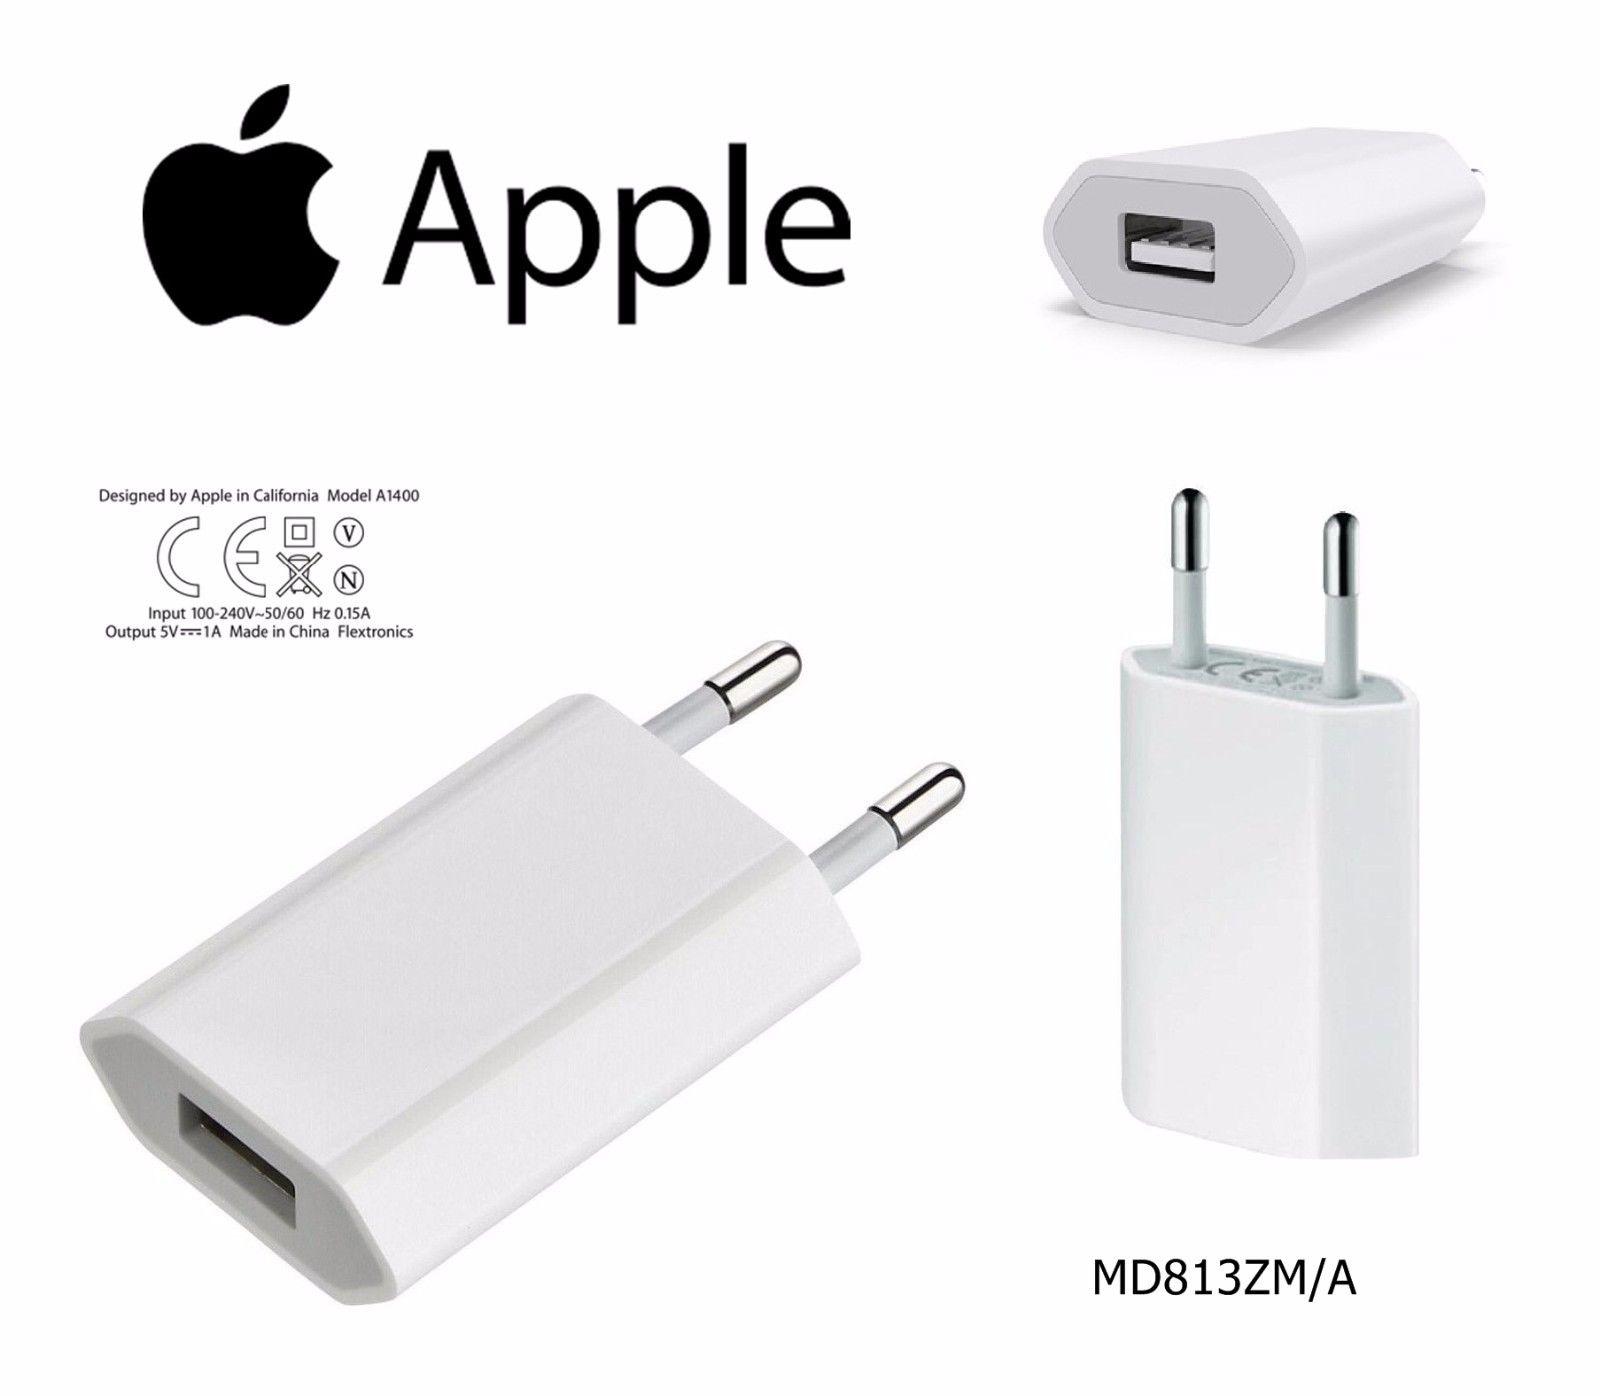 Купить зарядку эпл. Apple USB Power Adapter a1400. СЗУ Apple a1400. Зарядка Apple 5w. Сетевая зарядка Apple md813zm/a.